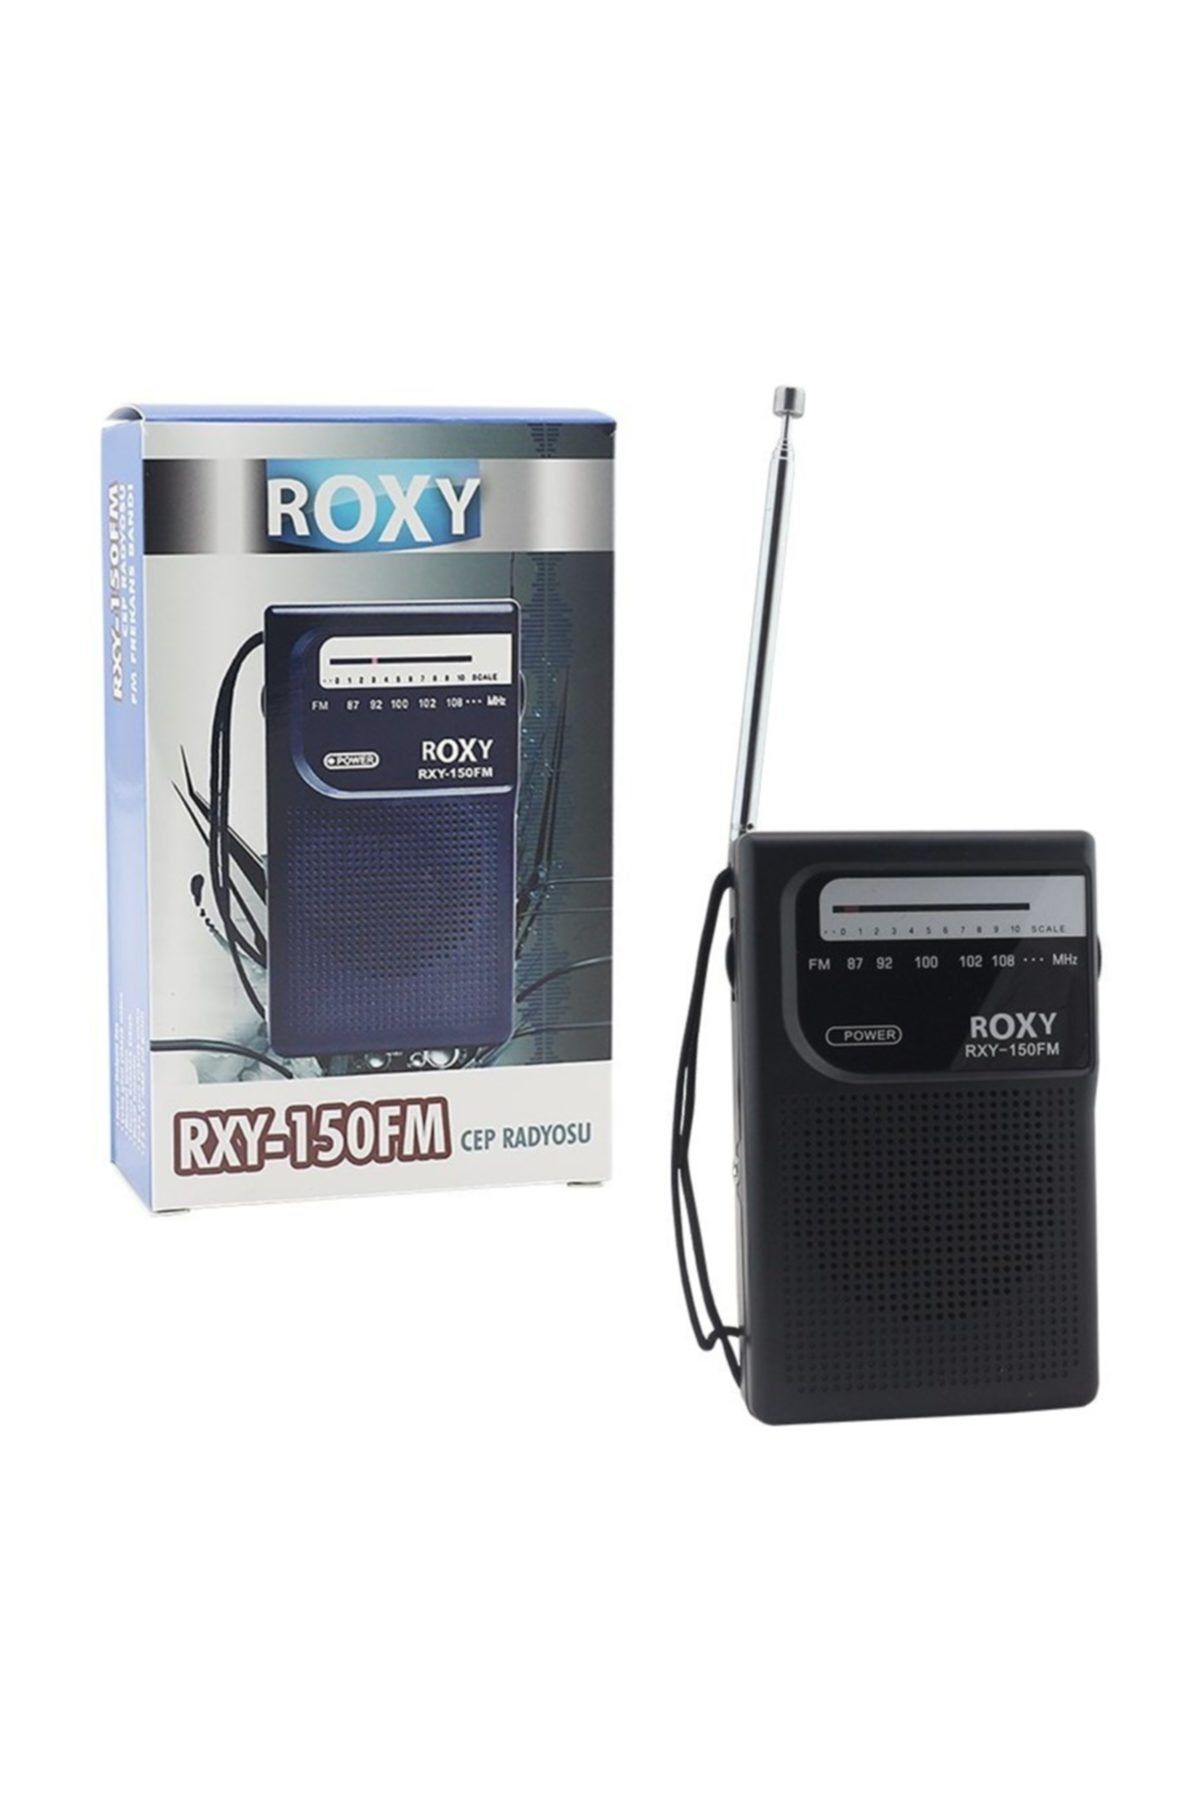 Roxy RXY-150 Radyo